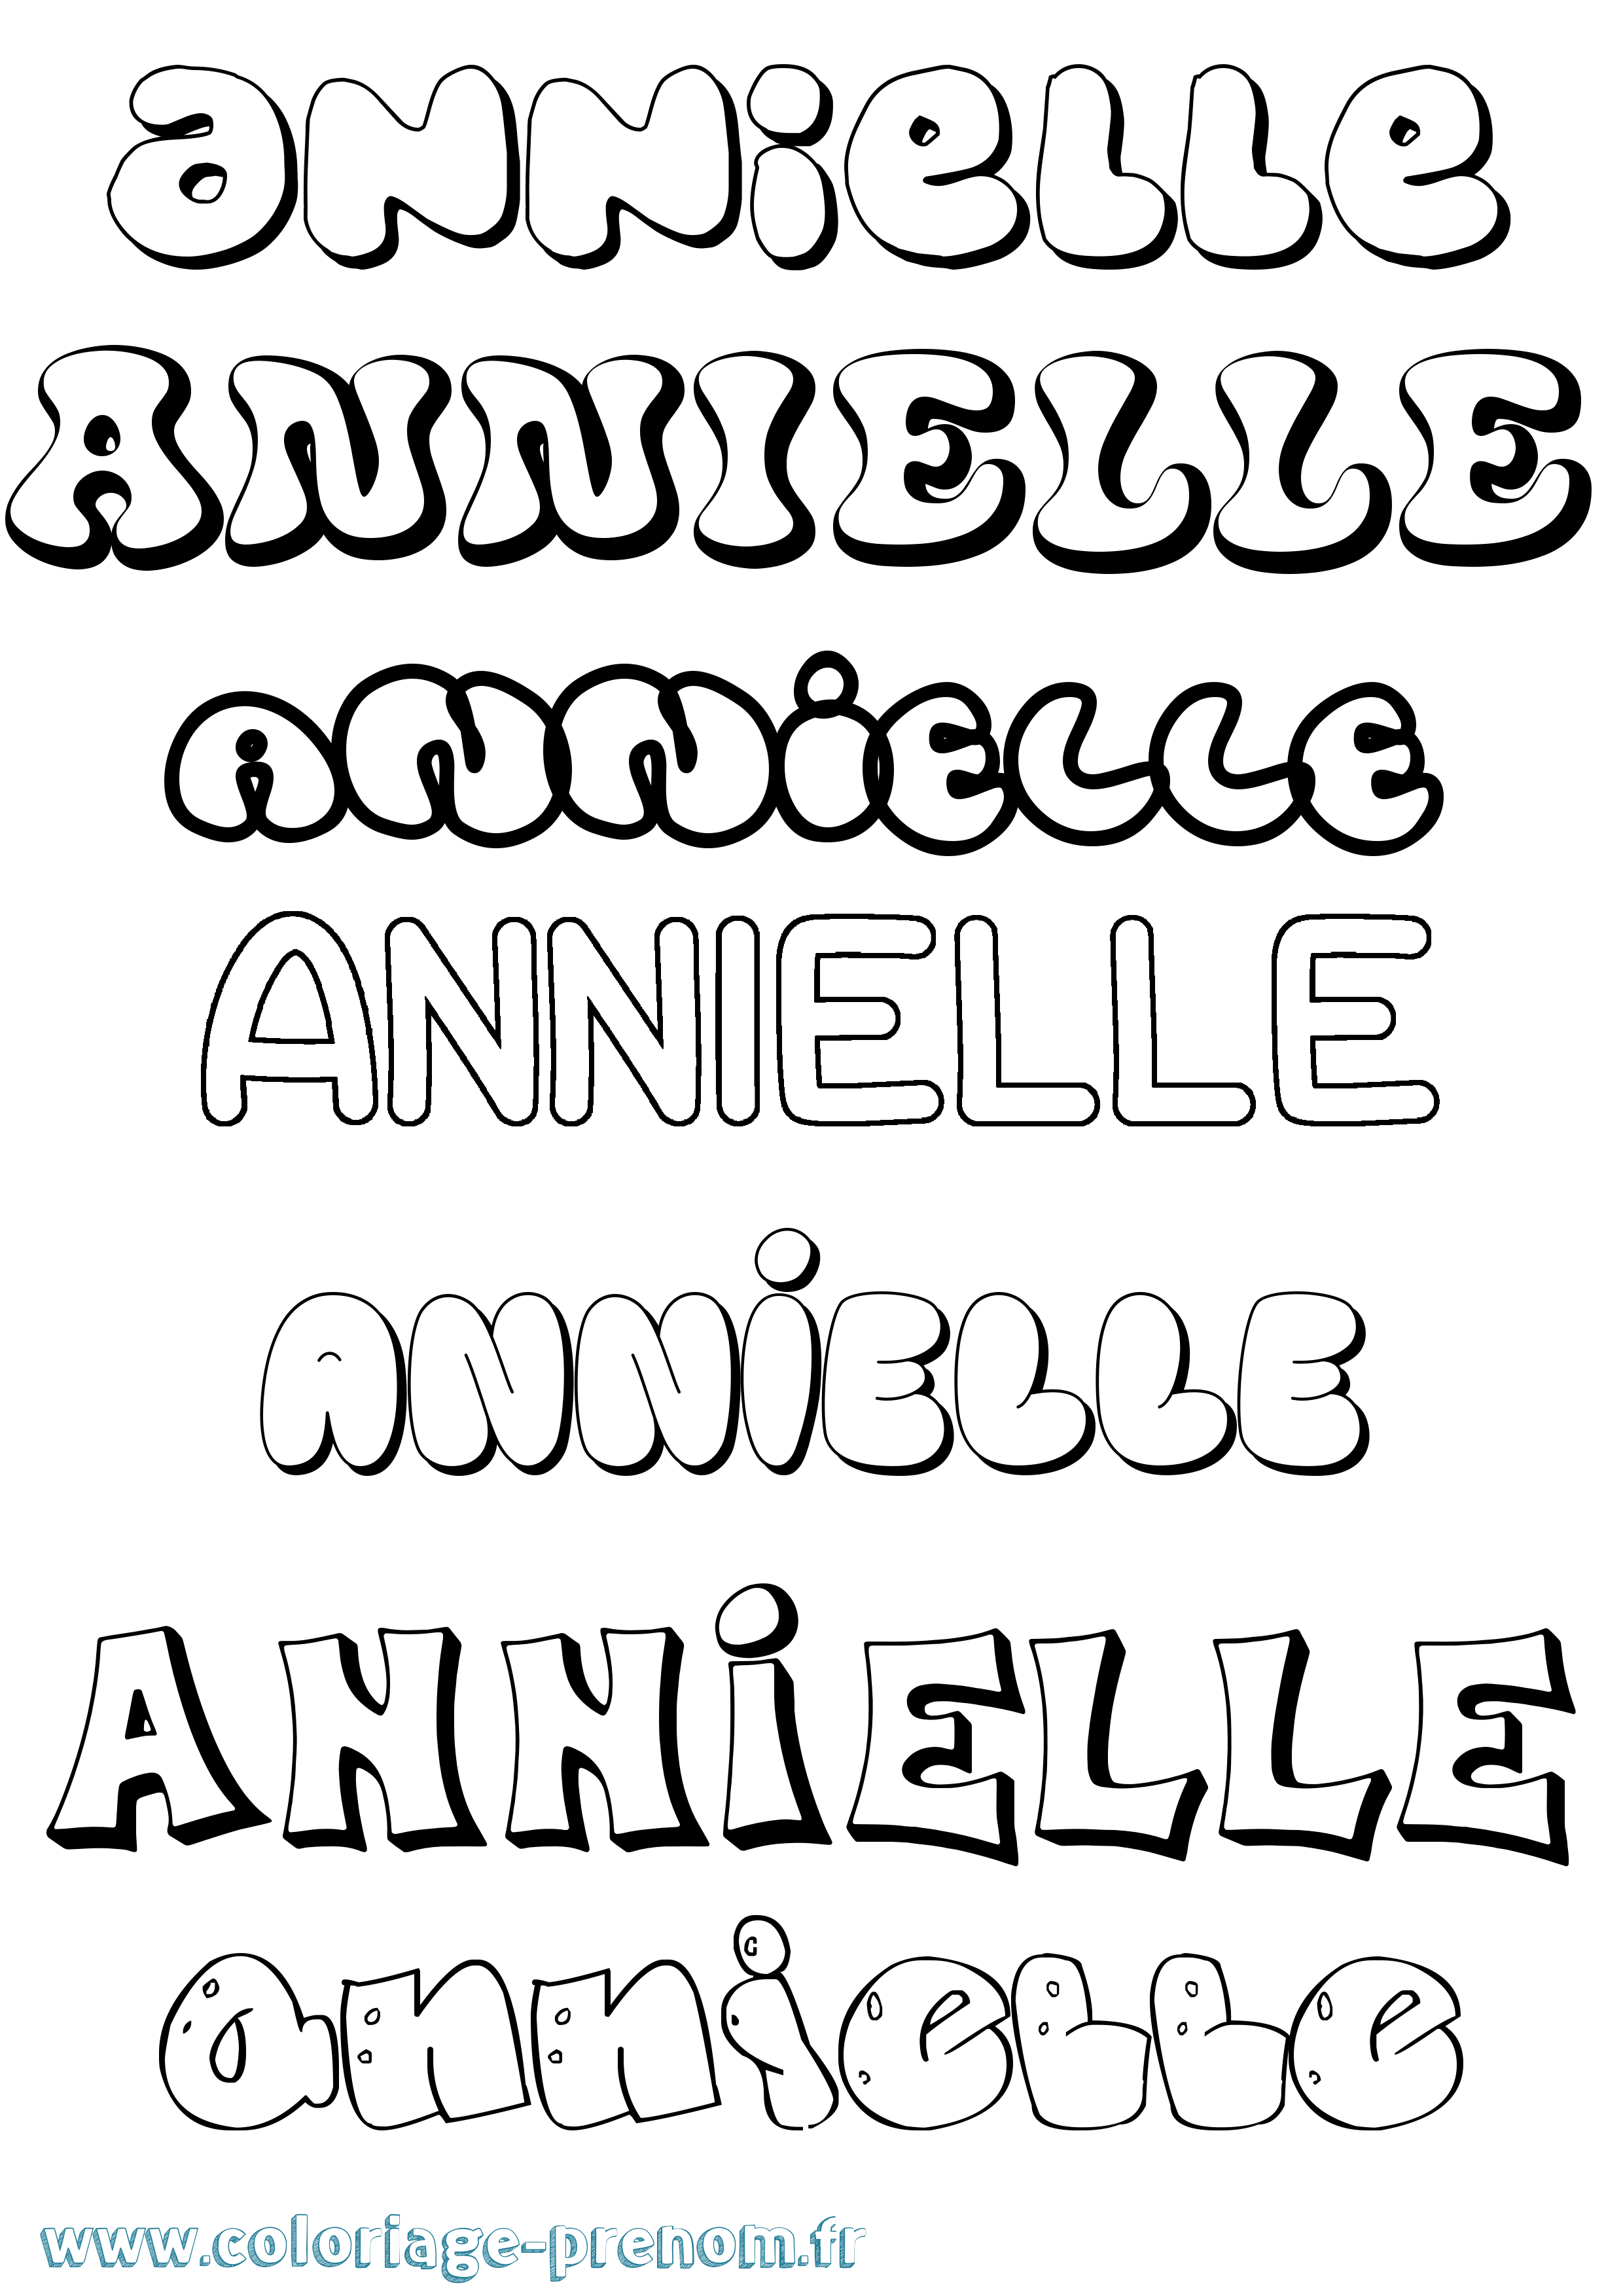 Coloriage prénom Annielle Bubble